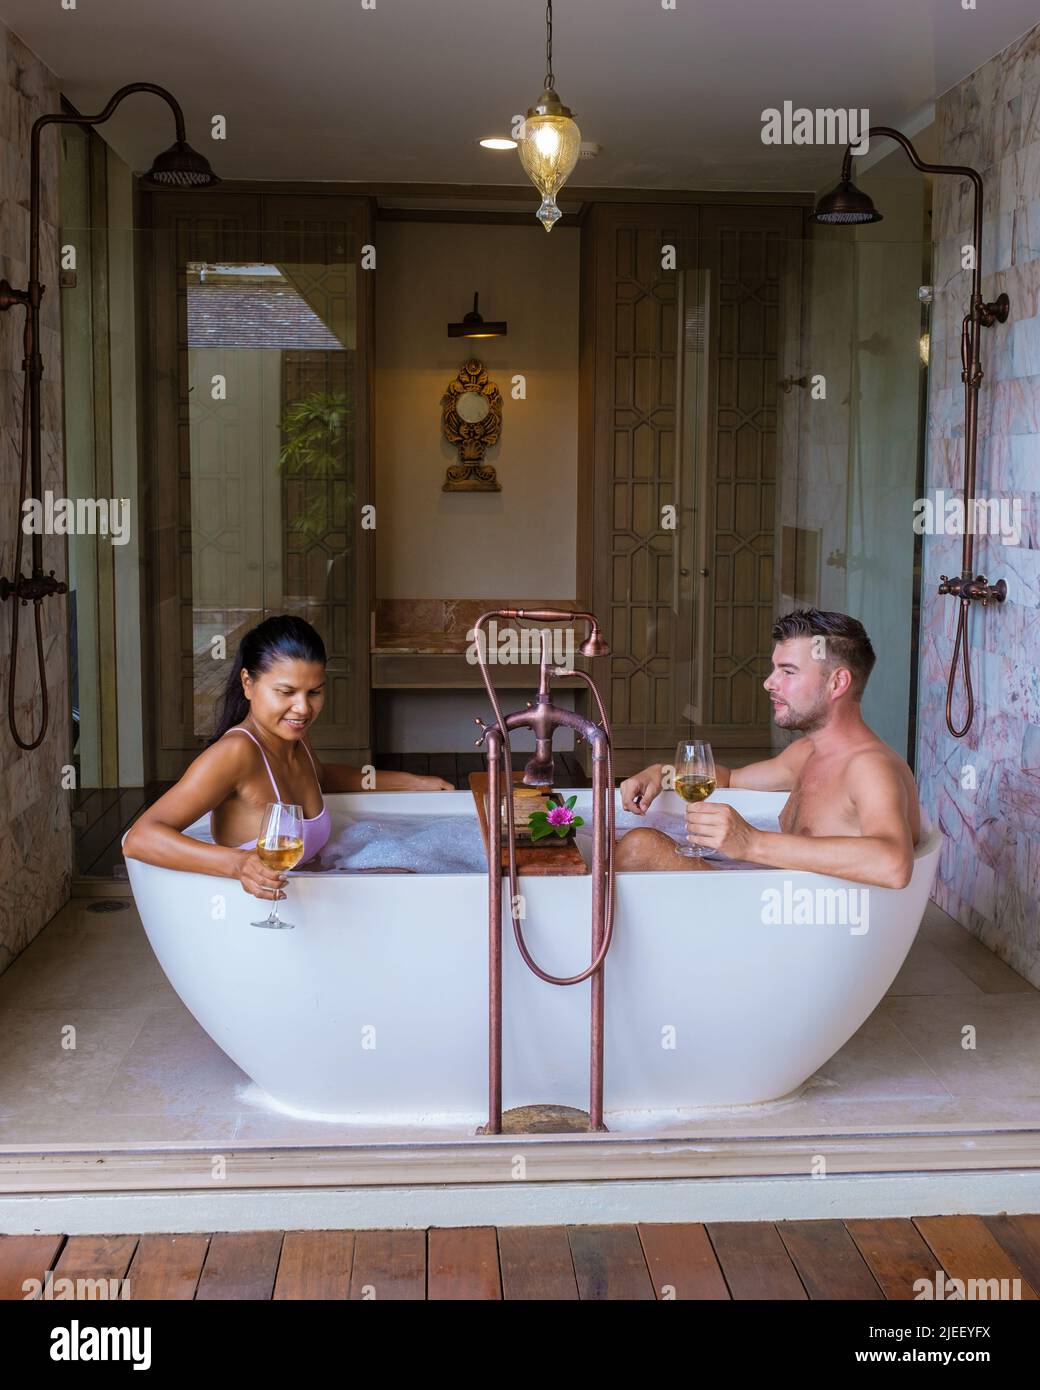 romantica vasca da bagno con petali di rosa, vacanza di lusso nella jacuzzi, coppia uomini e donne nella vasca da bagno di un resort di lusso durante la vacanza Foto Stock